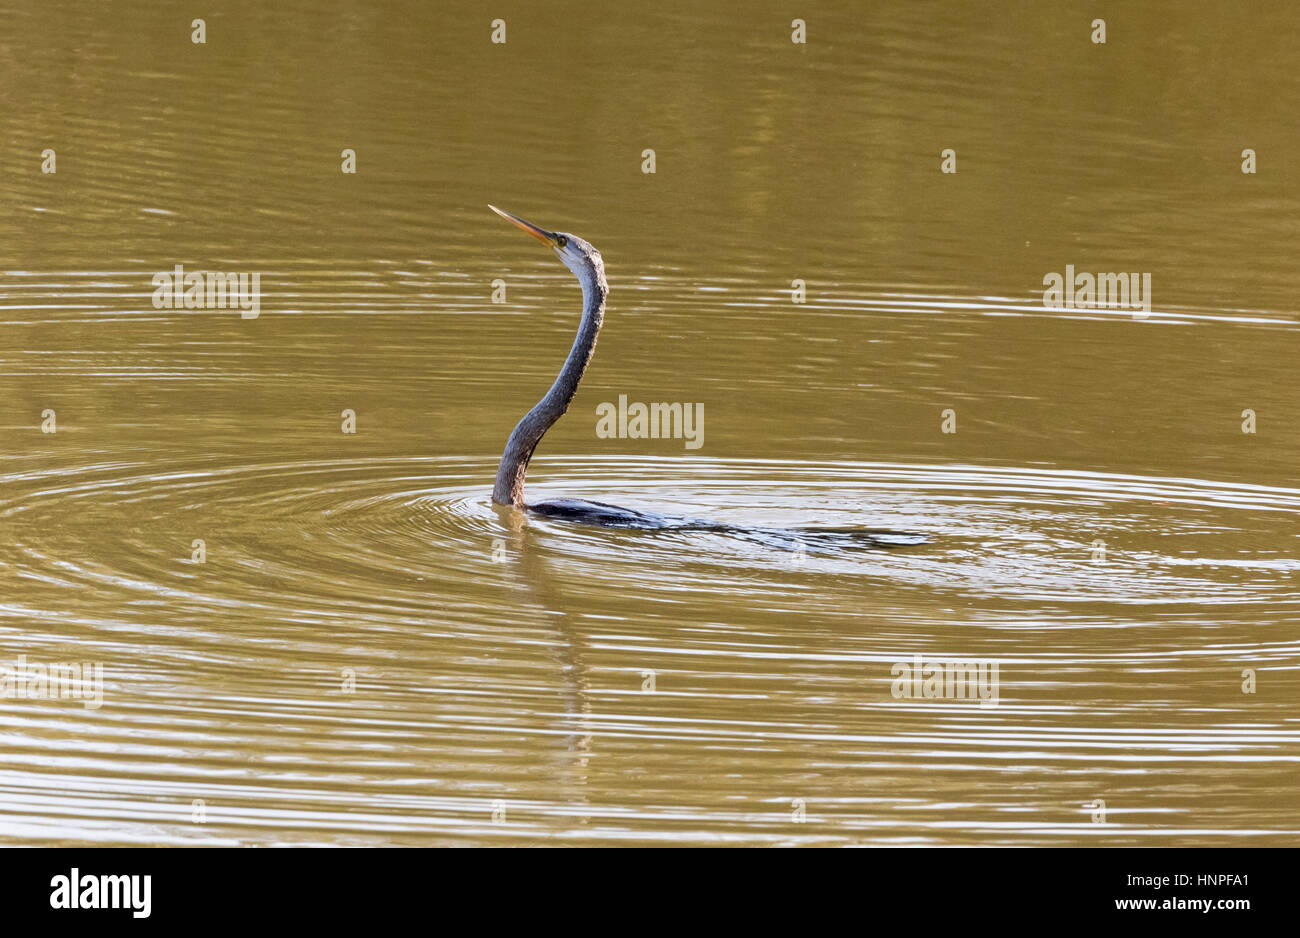 Eine orientalische Darter oder indischen Darter, manchmal genannt Snakebird (Anhinga Melanogaster), im Wasser, Tadoba Nationalpark, Indien Stockfoto